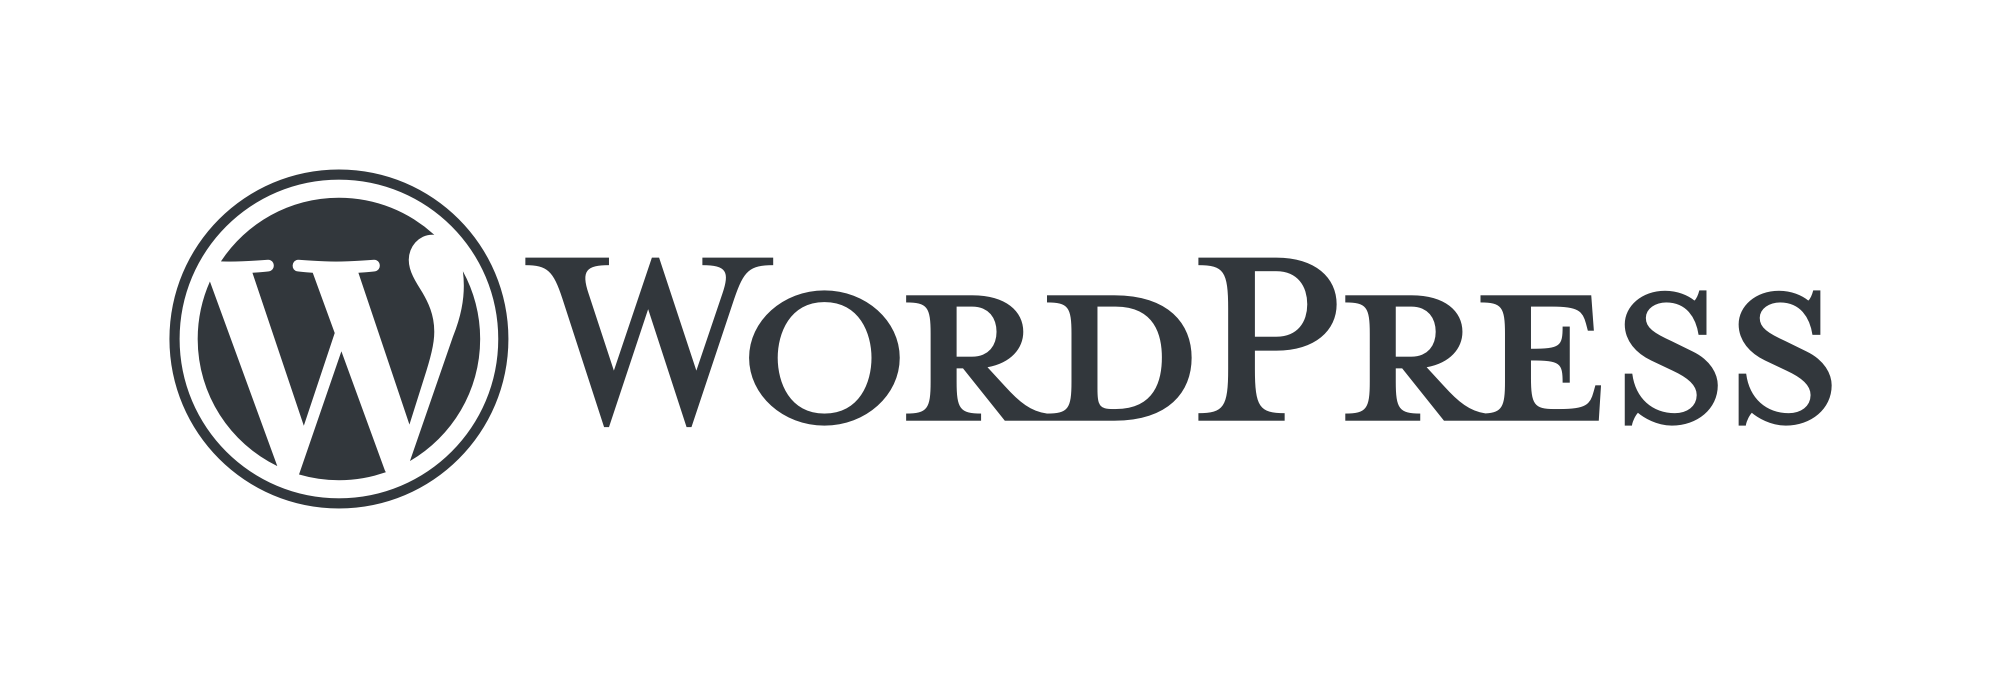 wordpress-logo-gris